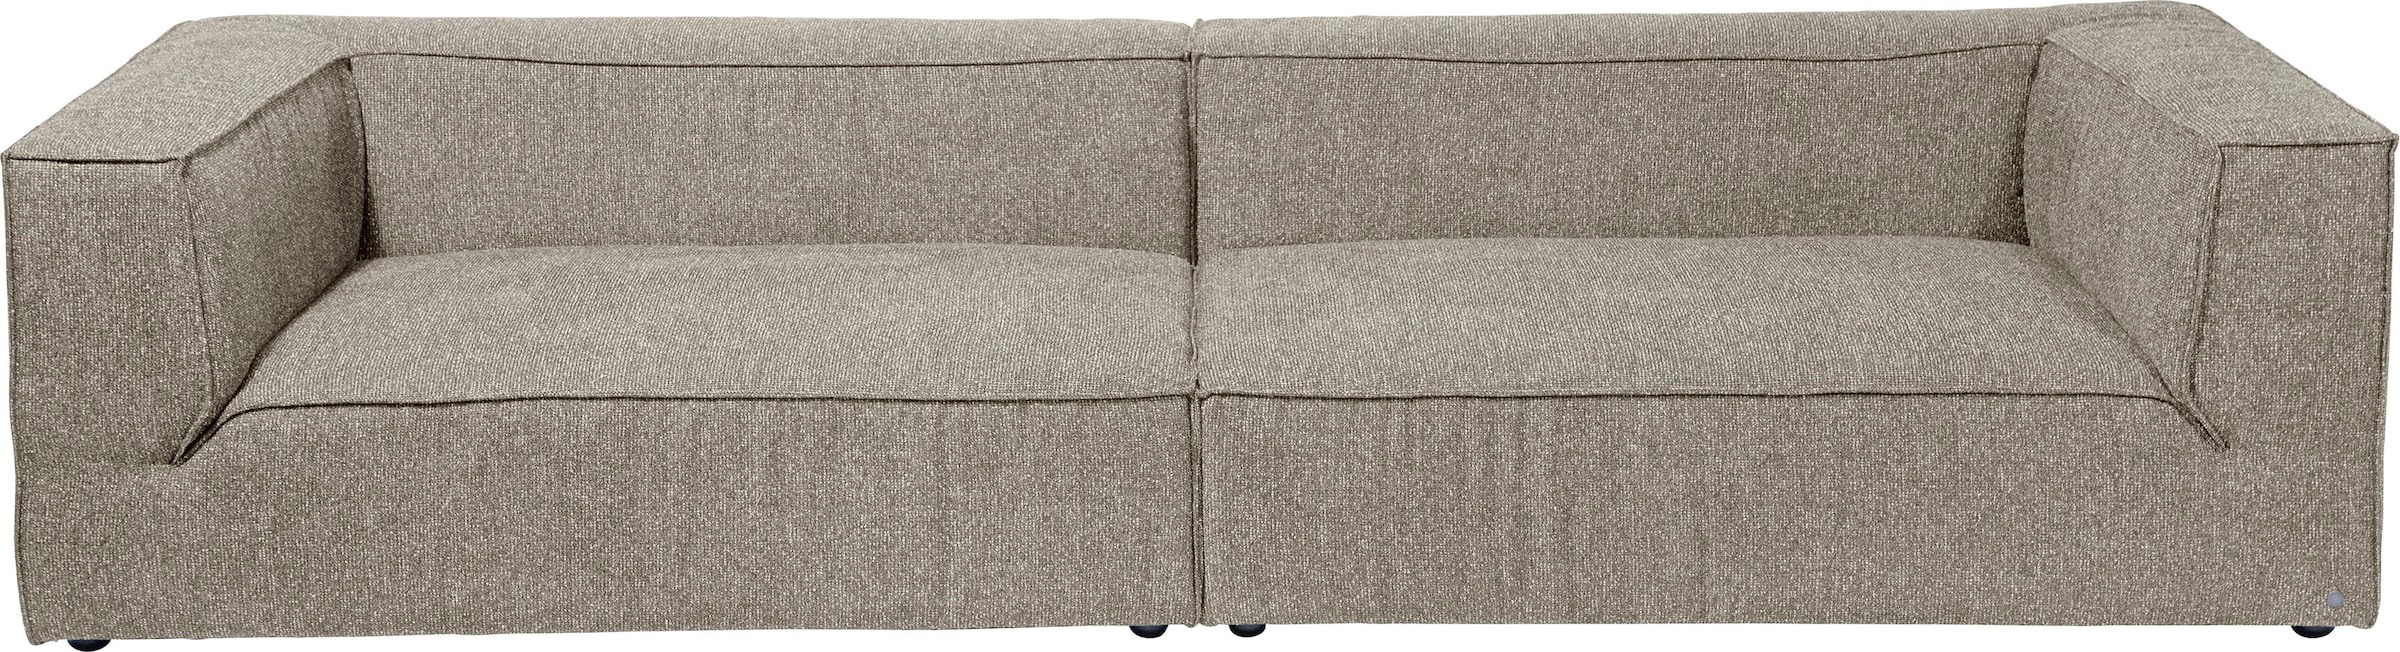 LOOKS by Wolfgang Joop Big-Sofa »Looks VI«, gerade Linien, in 2  Bezugsqualitäten kaufen bei OTTO